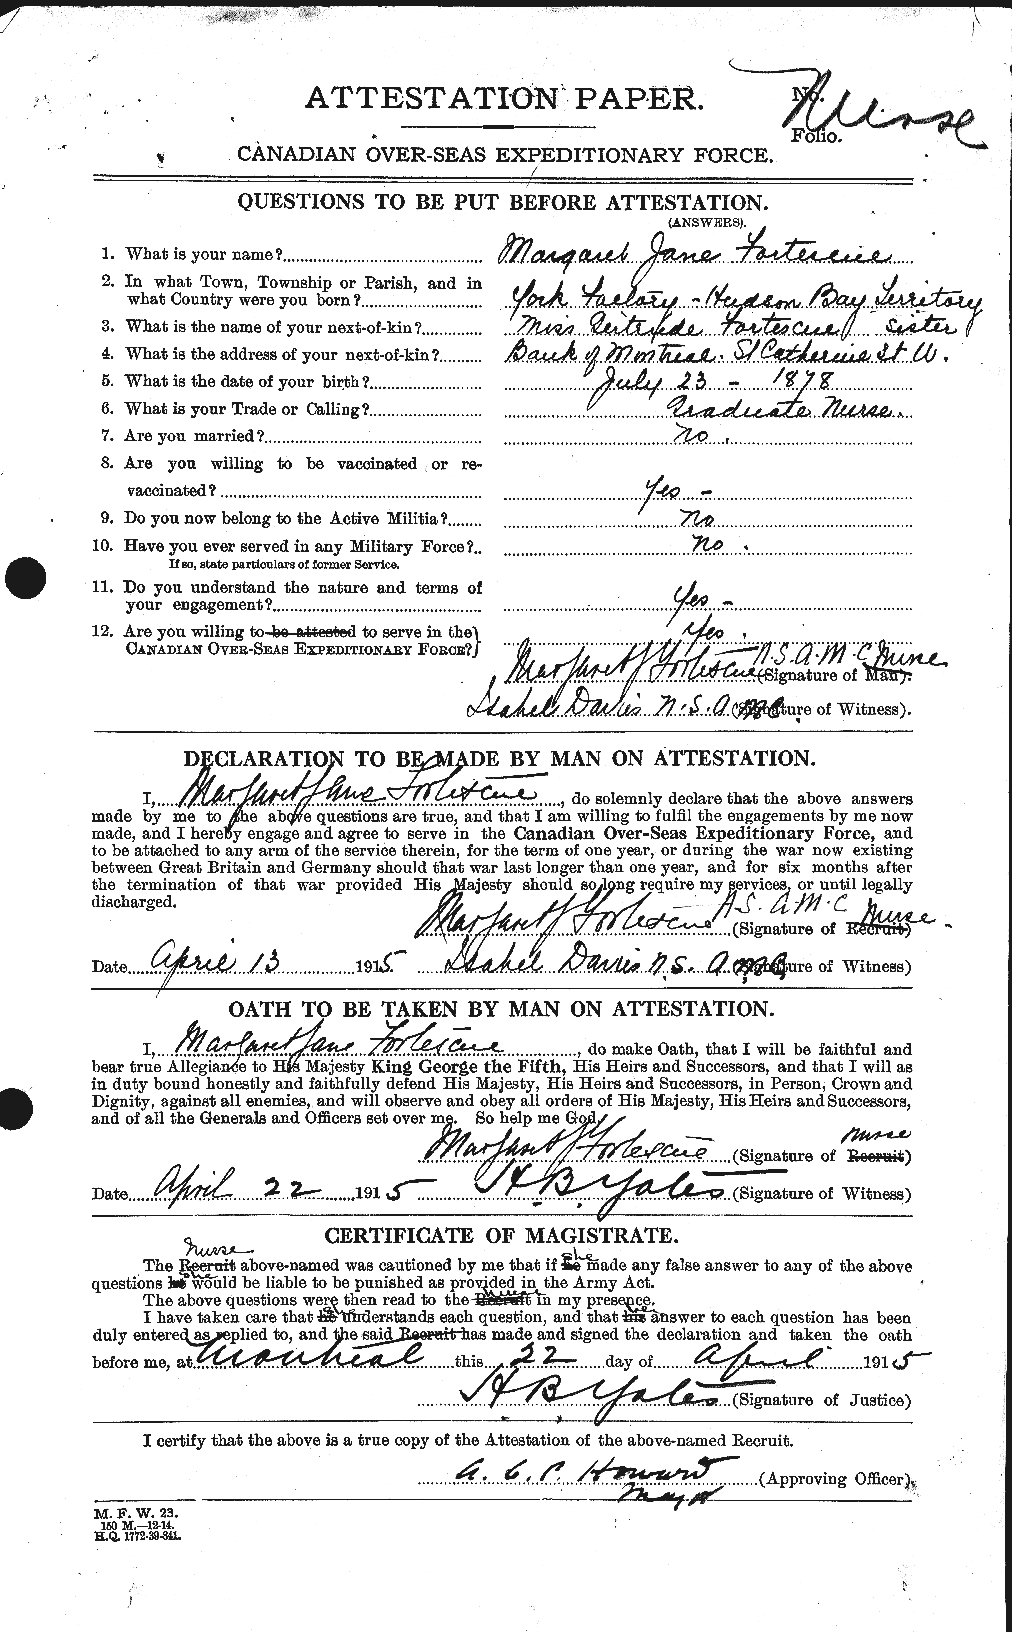 Dossiers du Personnel de la Première Guerre mondiale - CEC 331550a